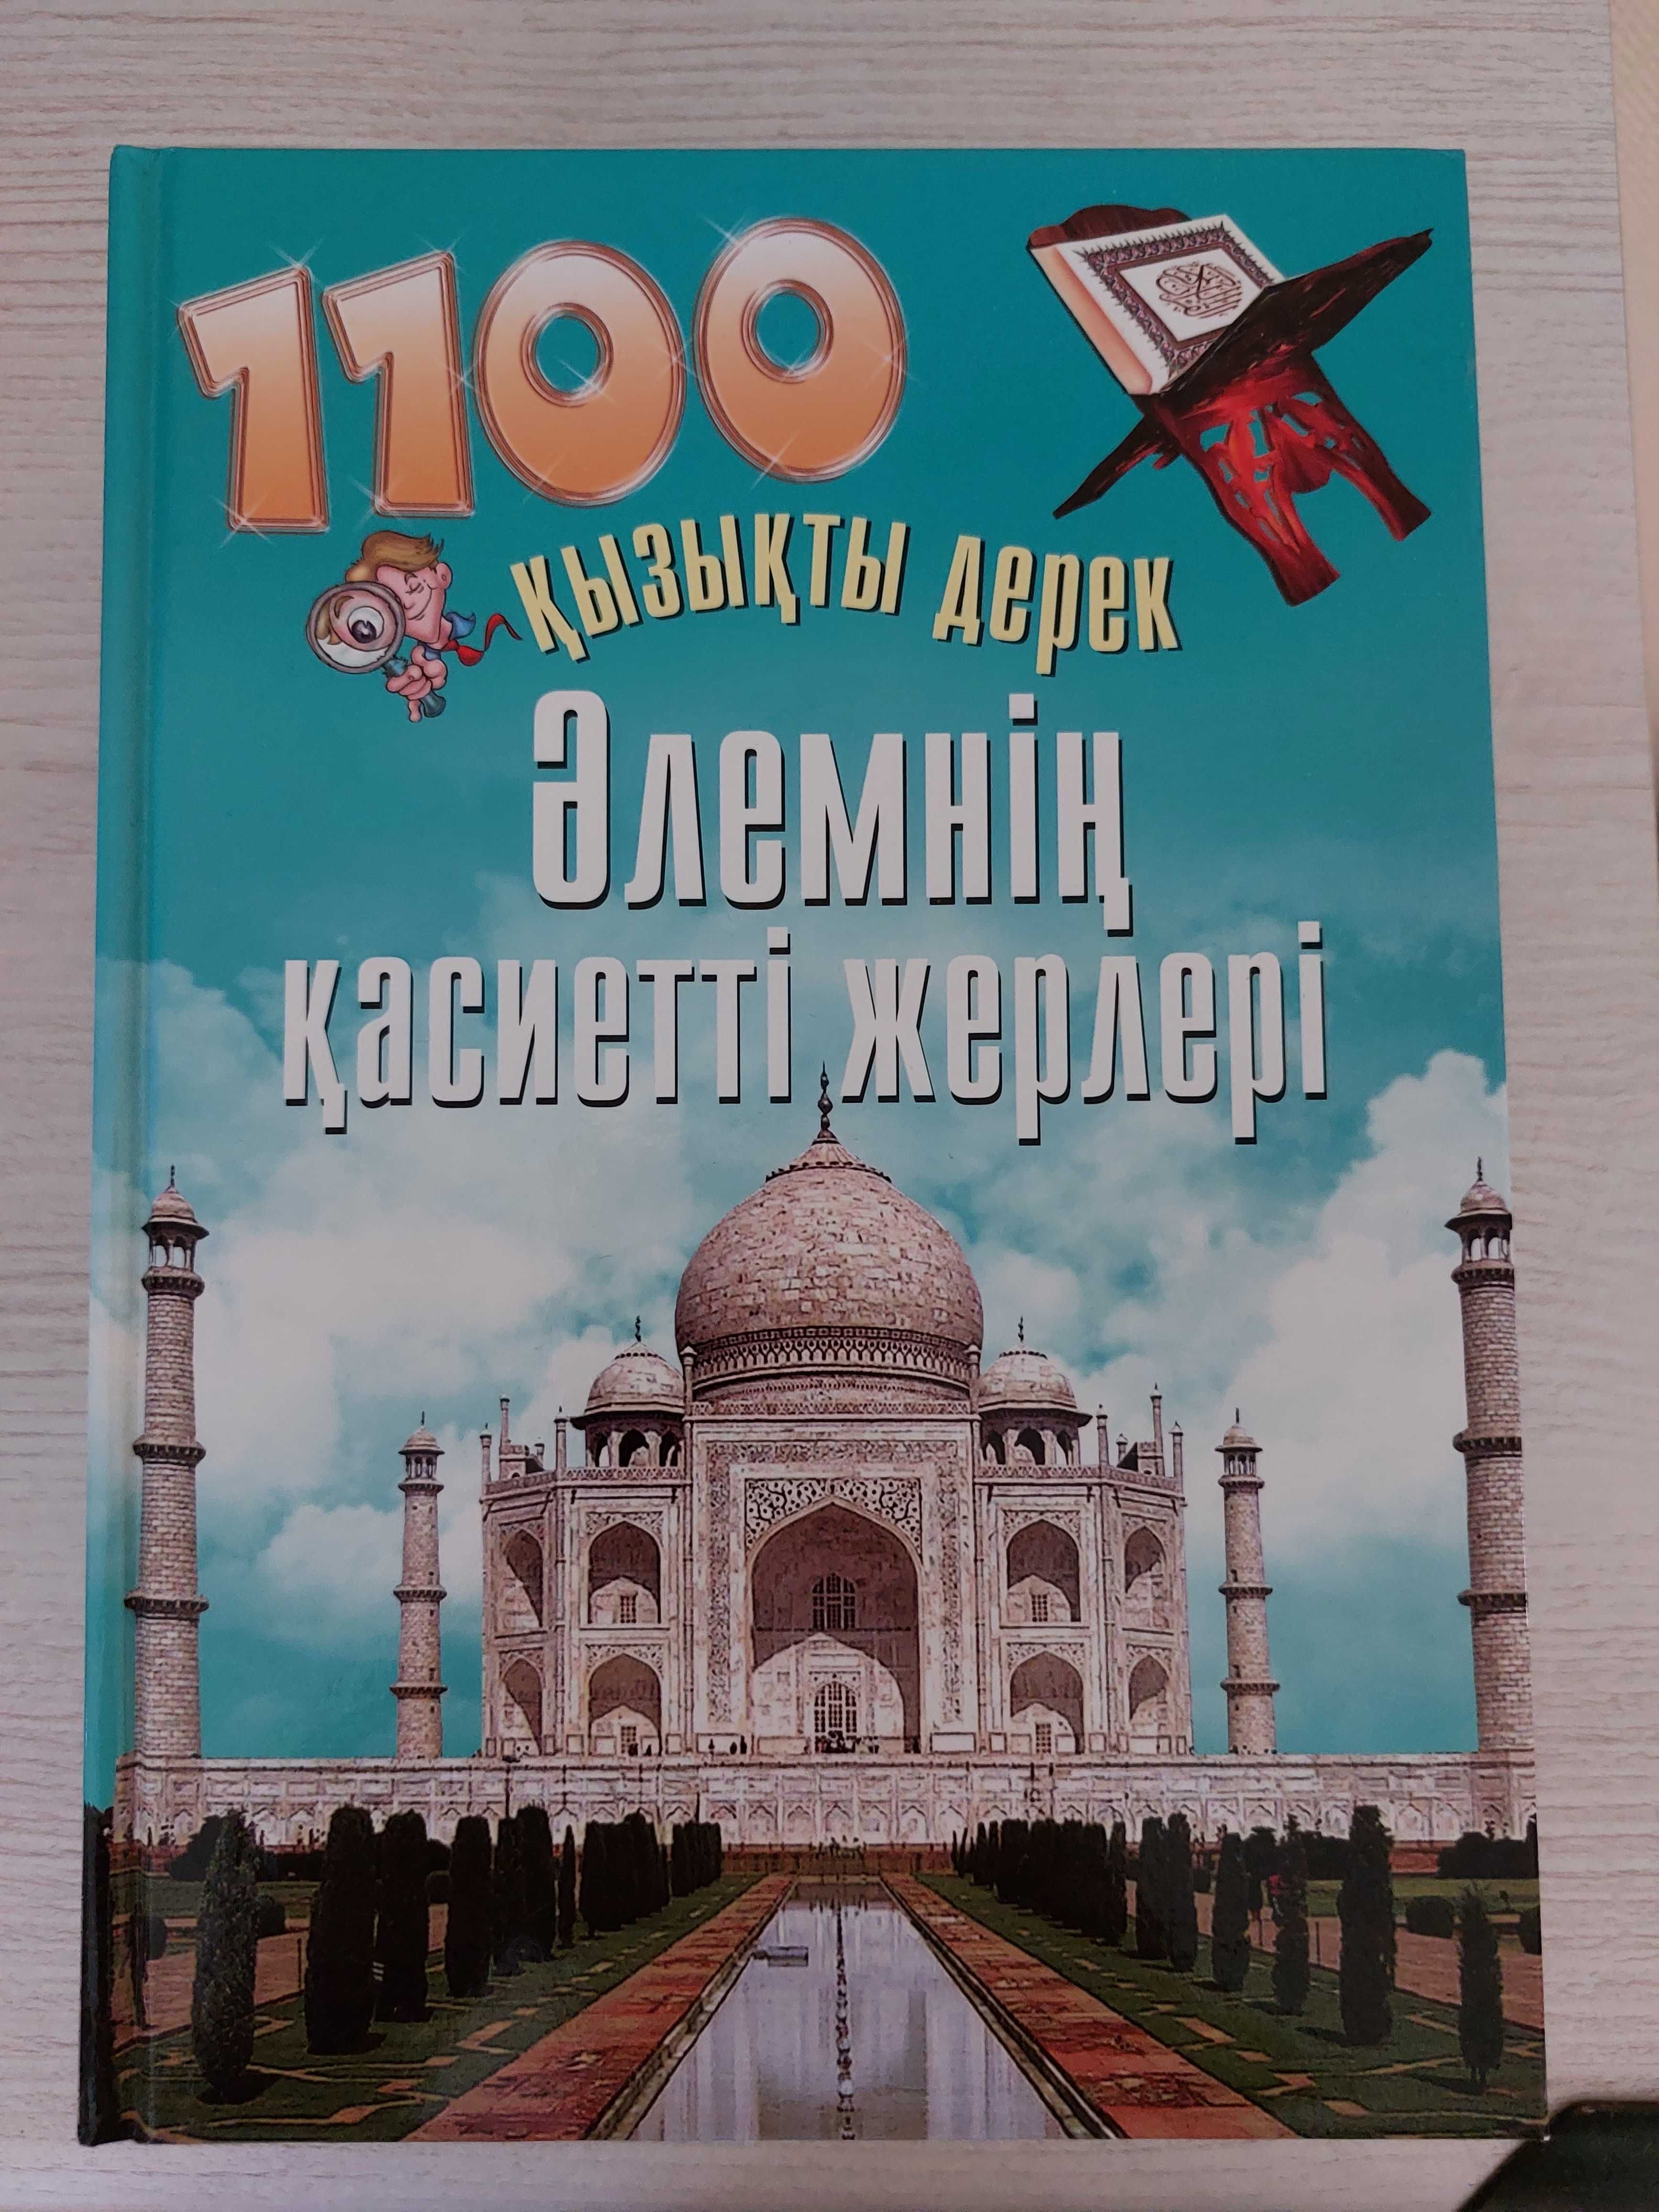 Продам книги на казахском языке из серии 1100 қызықты деректер